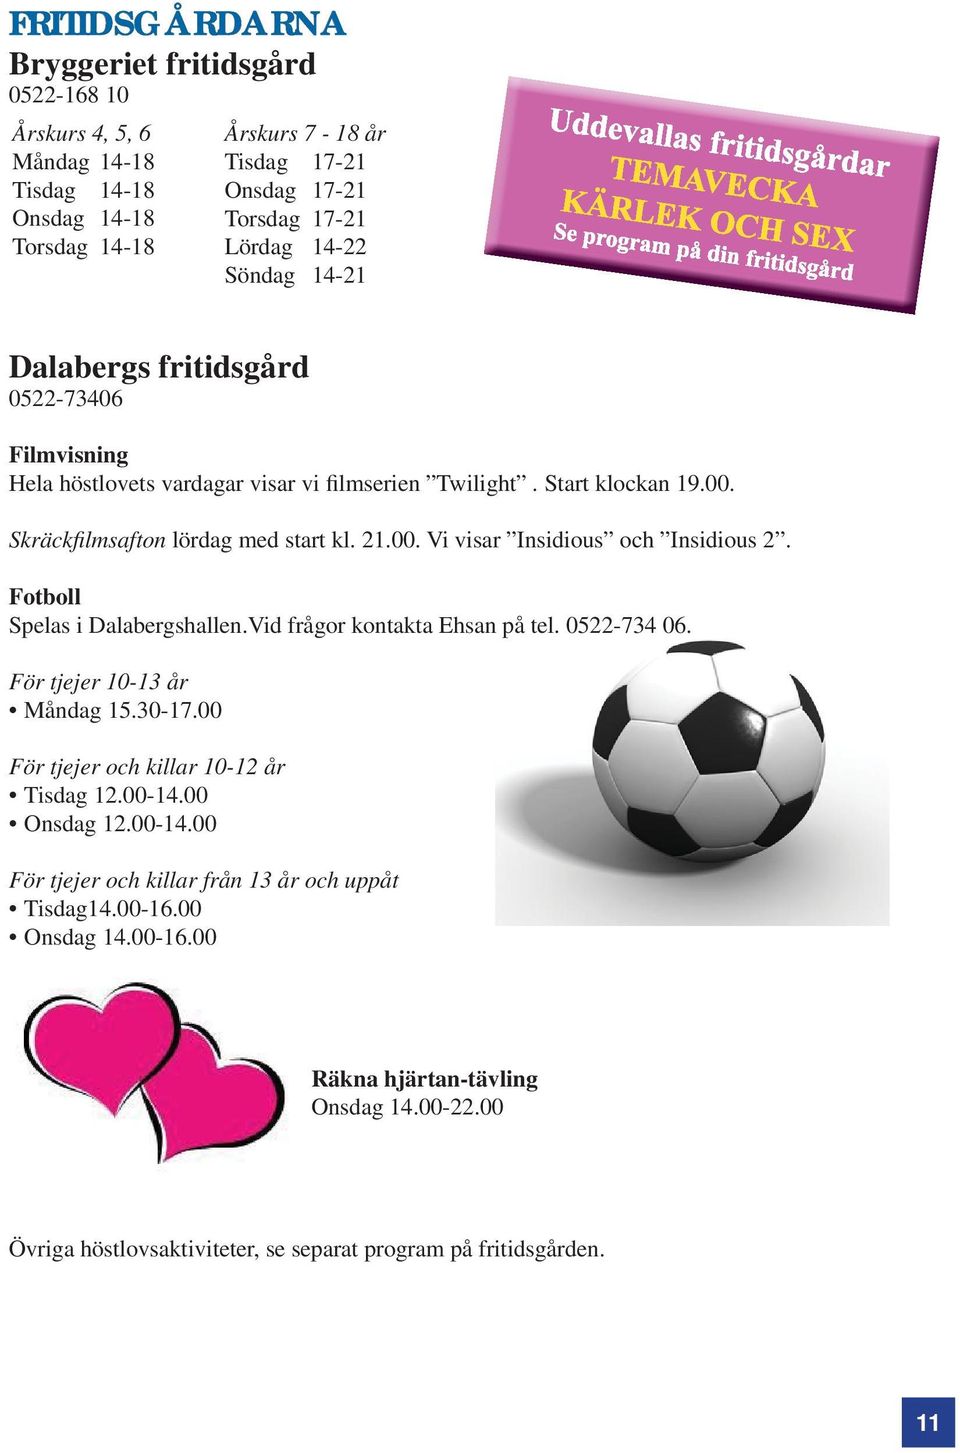 Fotboll Spelas i Dalabergshallen.Vid frågor kontakta Ehsan på tel. 0522-734 06. För tjejer 10-13 år Måndag 15.30-17.00 För tjejer och killar 10-12 år Tisdag 12.00-14.